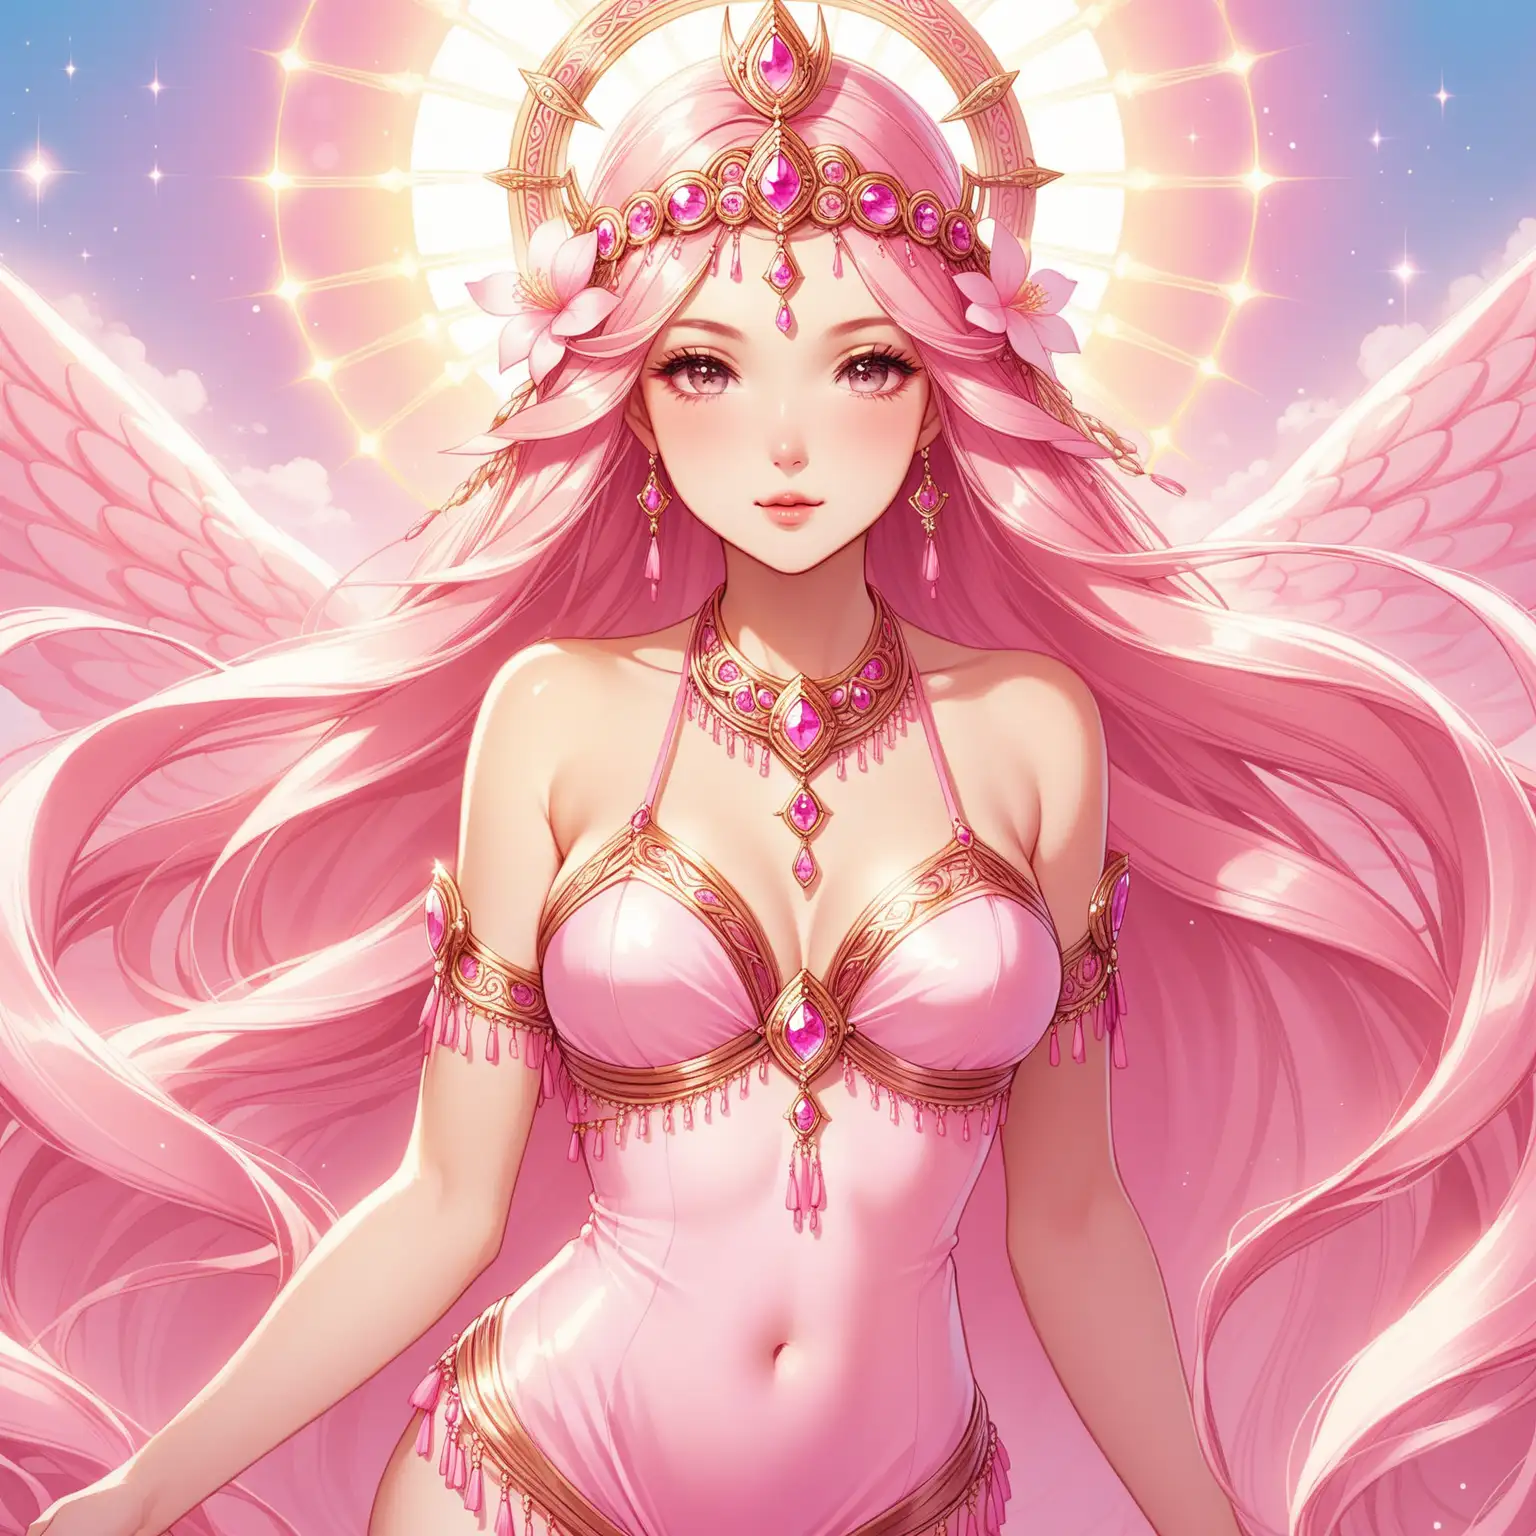 Feminine goddess in pink